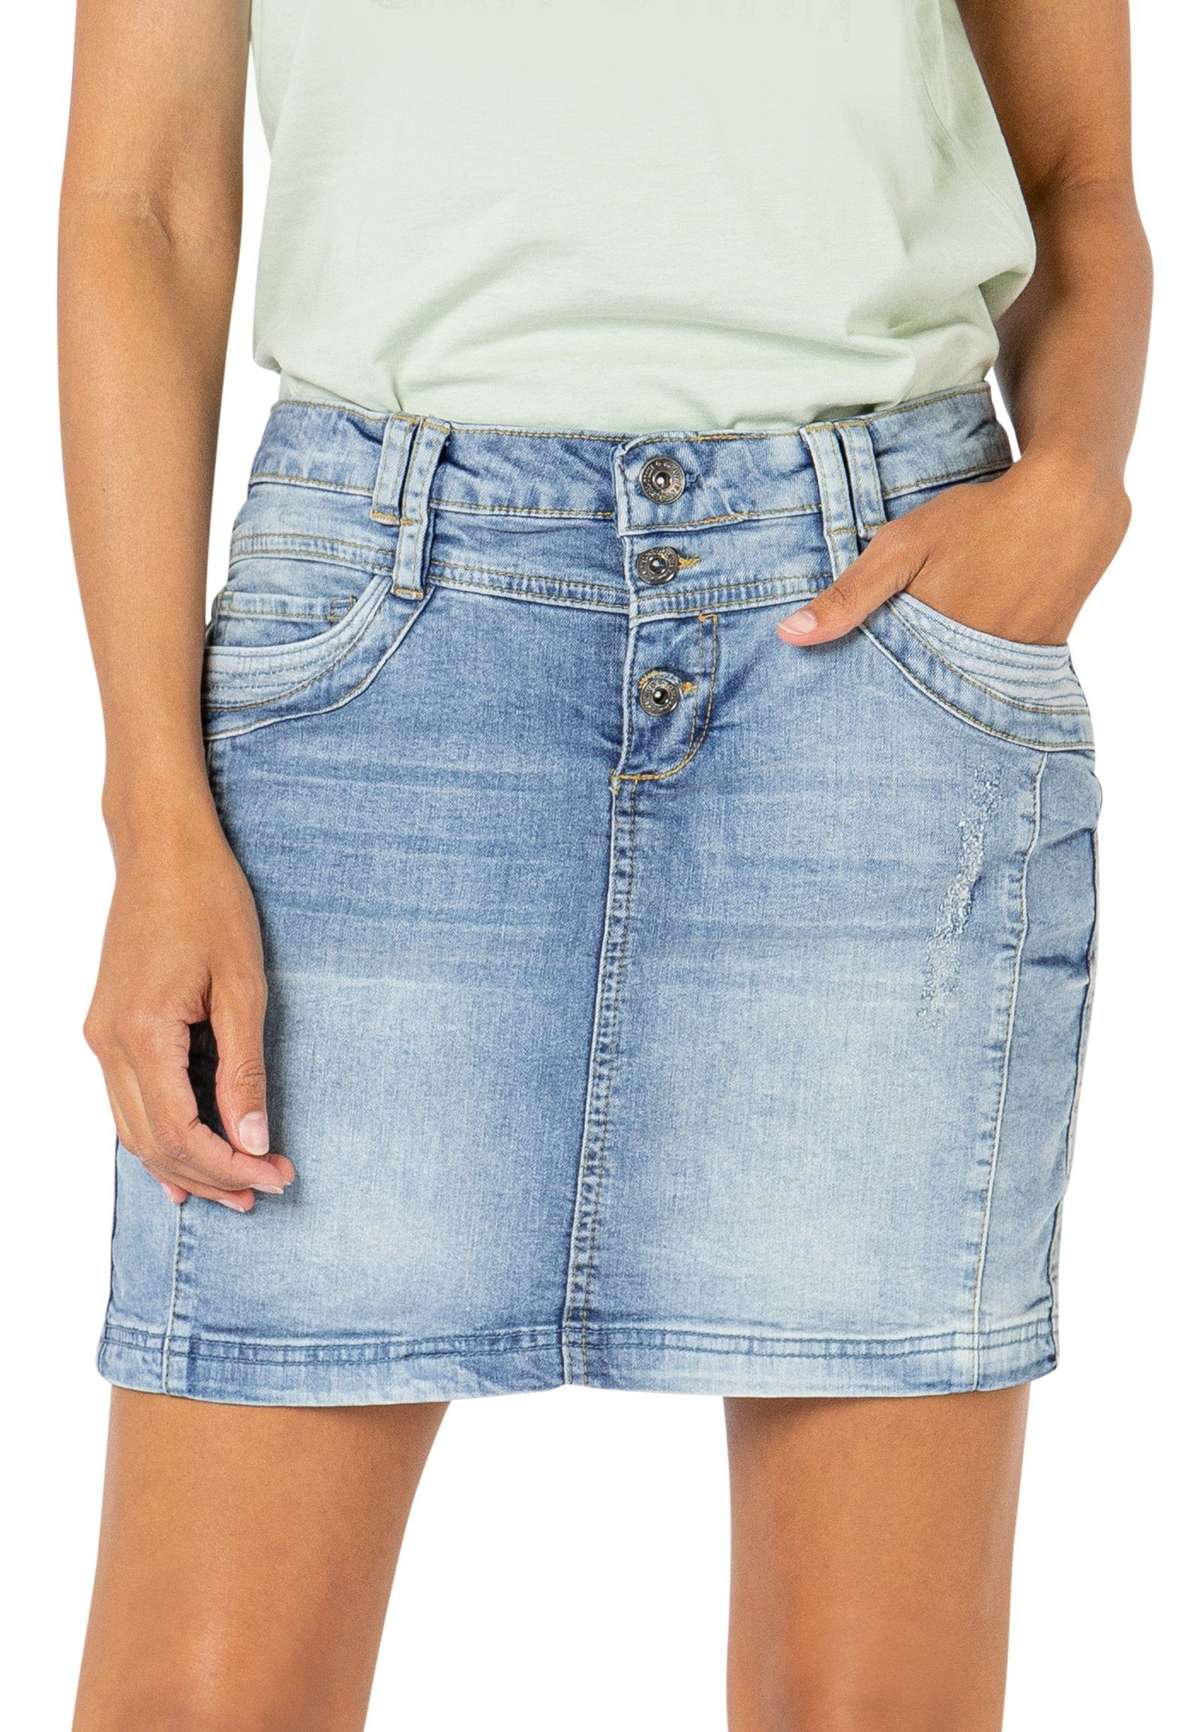 Джинсовая юбка, джинсовая мини-юбка